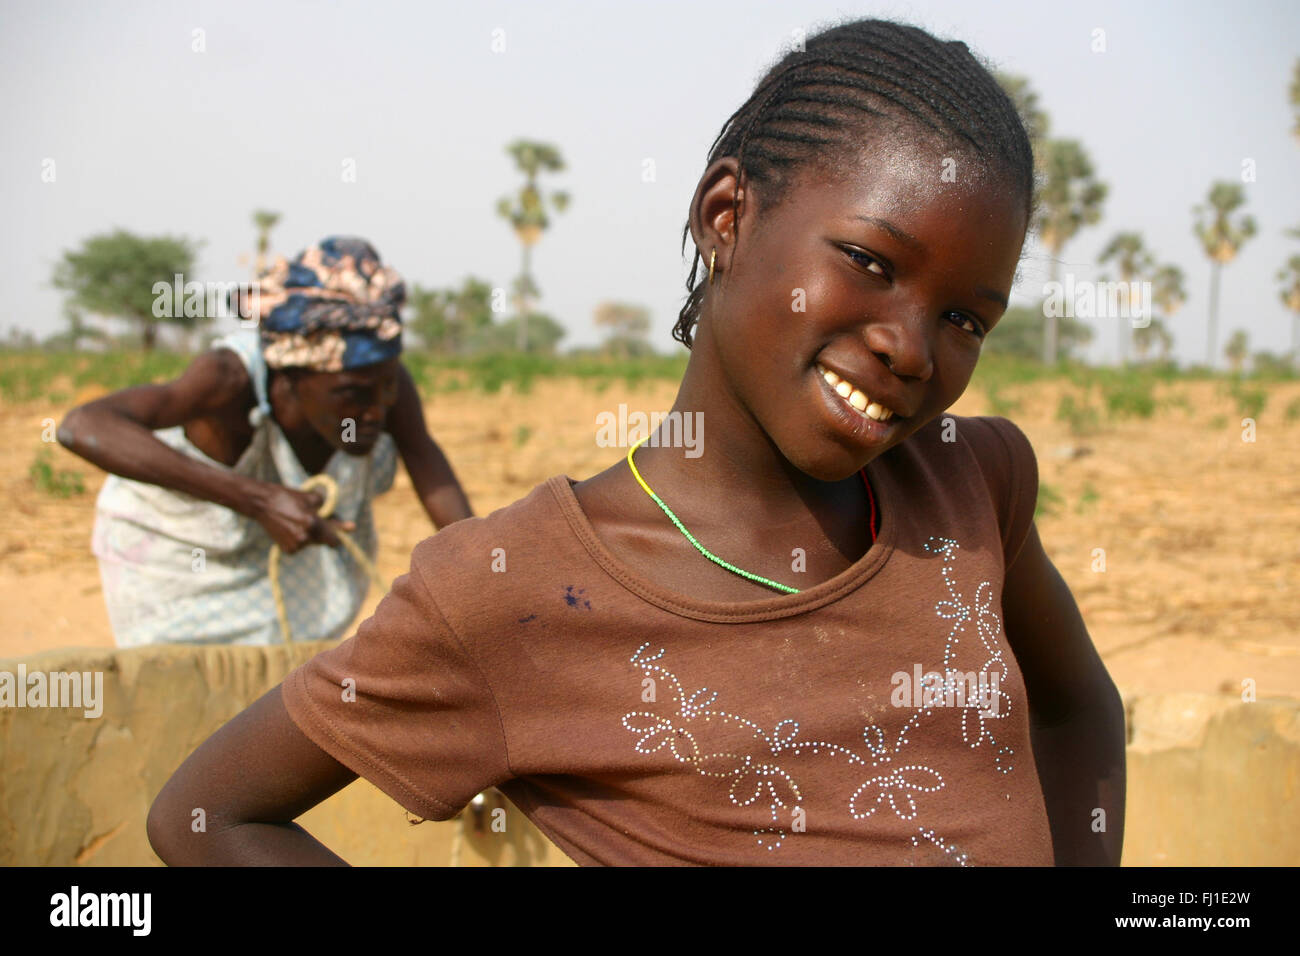 Portrait de jeune fille africaine noire du Sine Saloum , au sud du Sénégal Banque D'Images